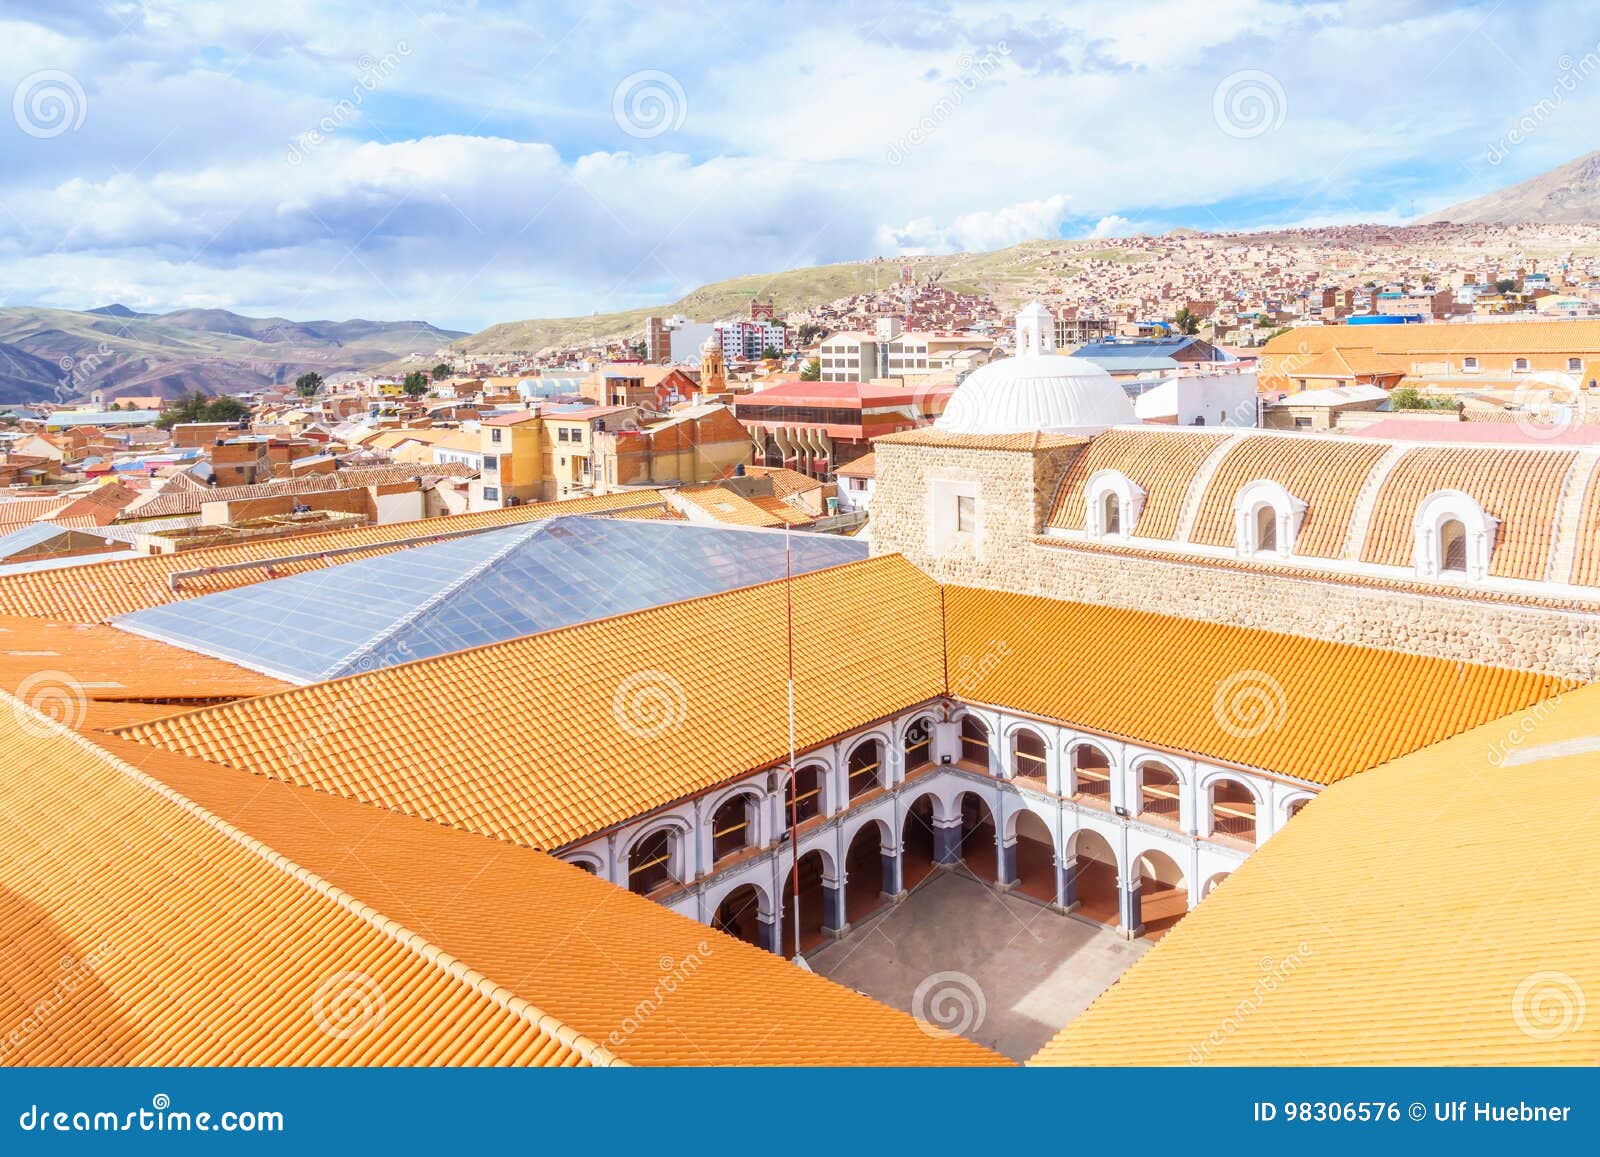 cityscape of colonial tow of potosi - colegio nacional pichincha - bolivia